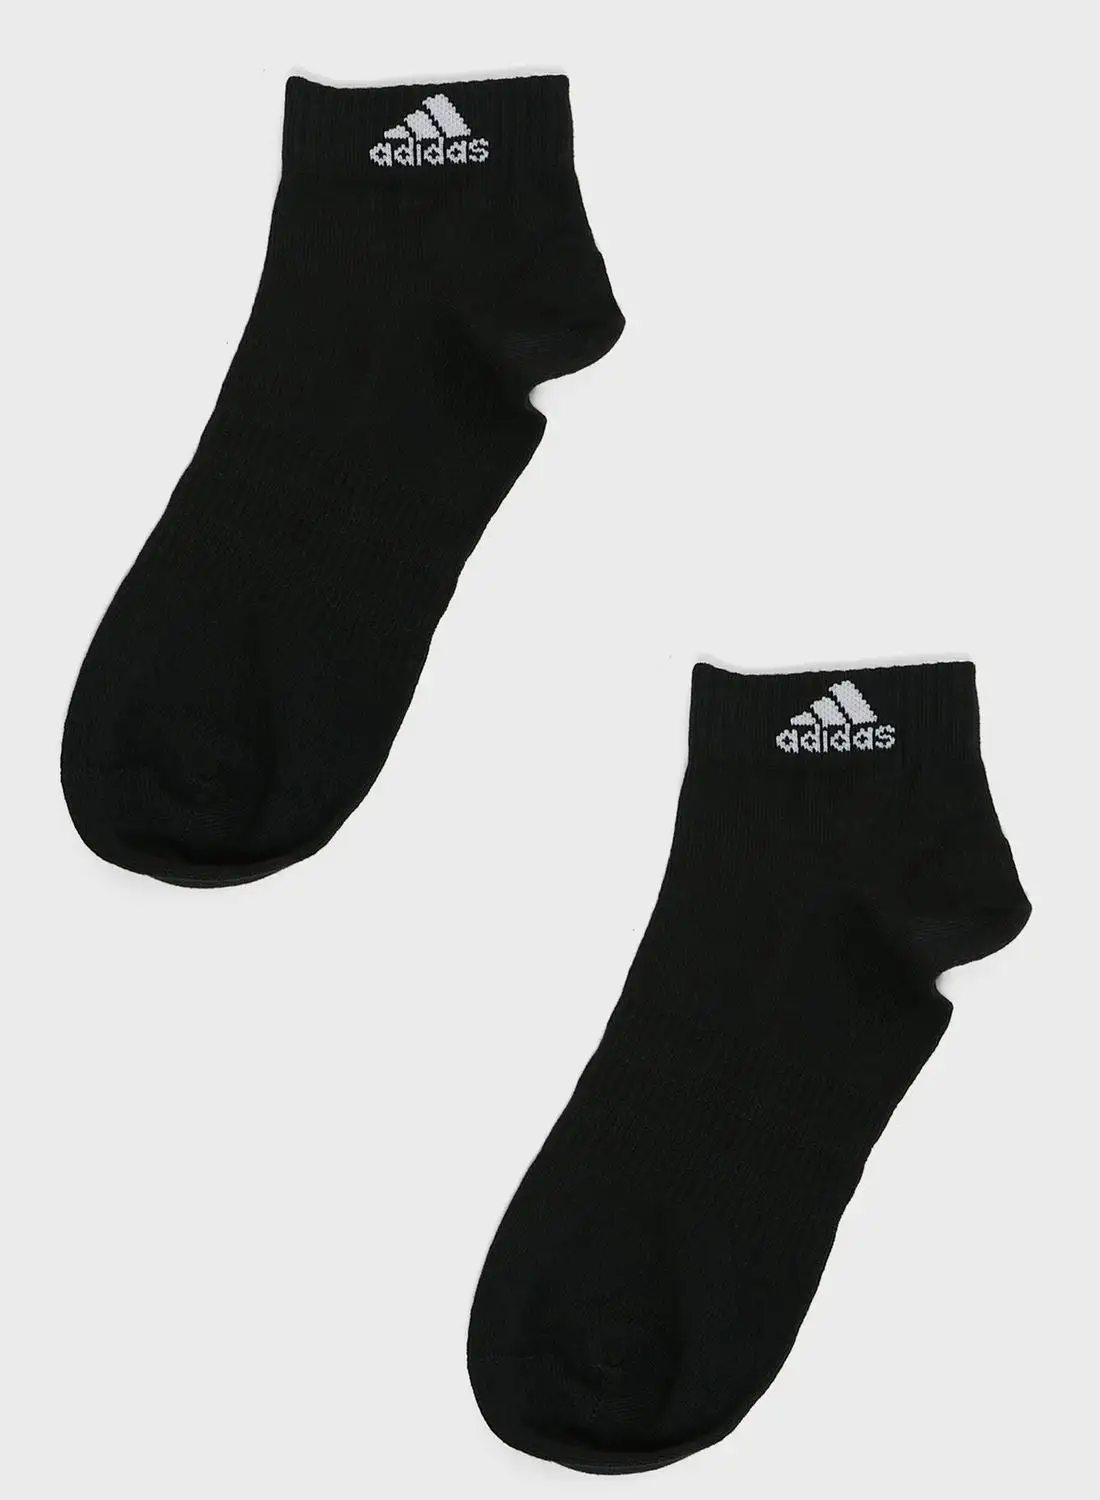 Adidas 2 Pack Ankle Socks